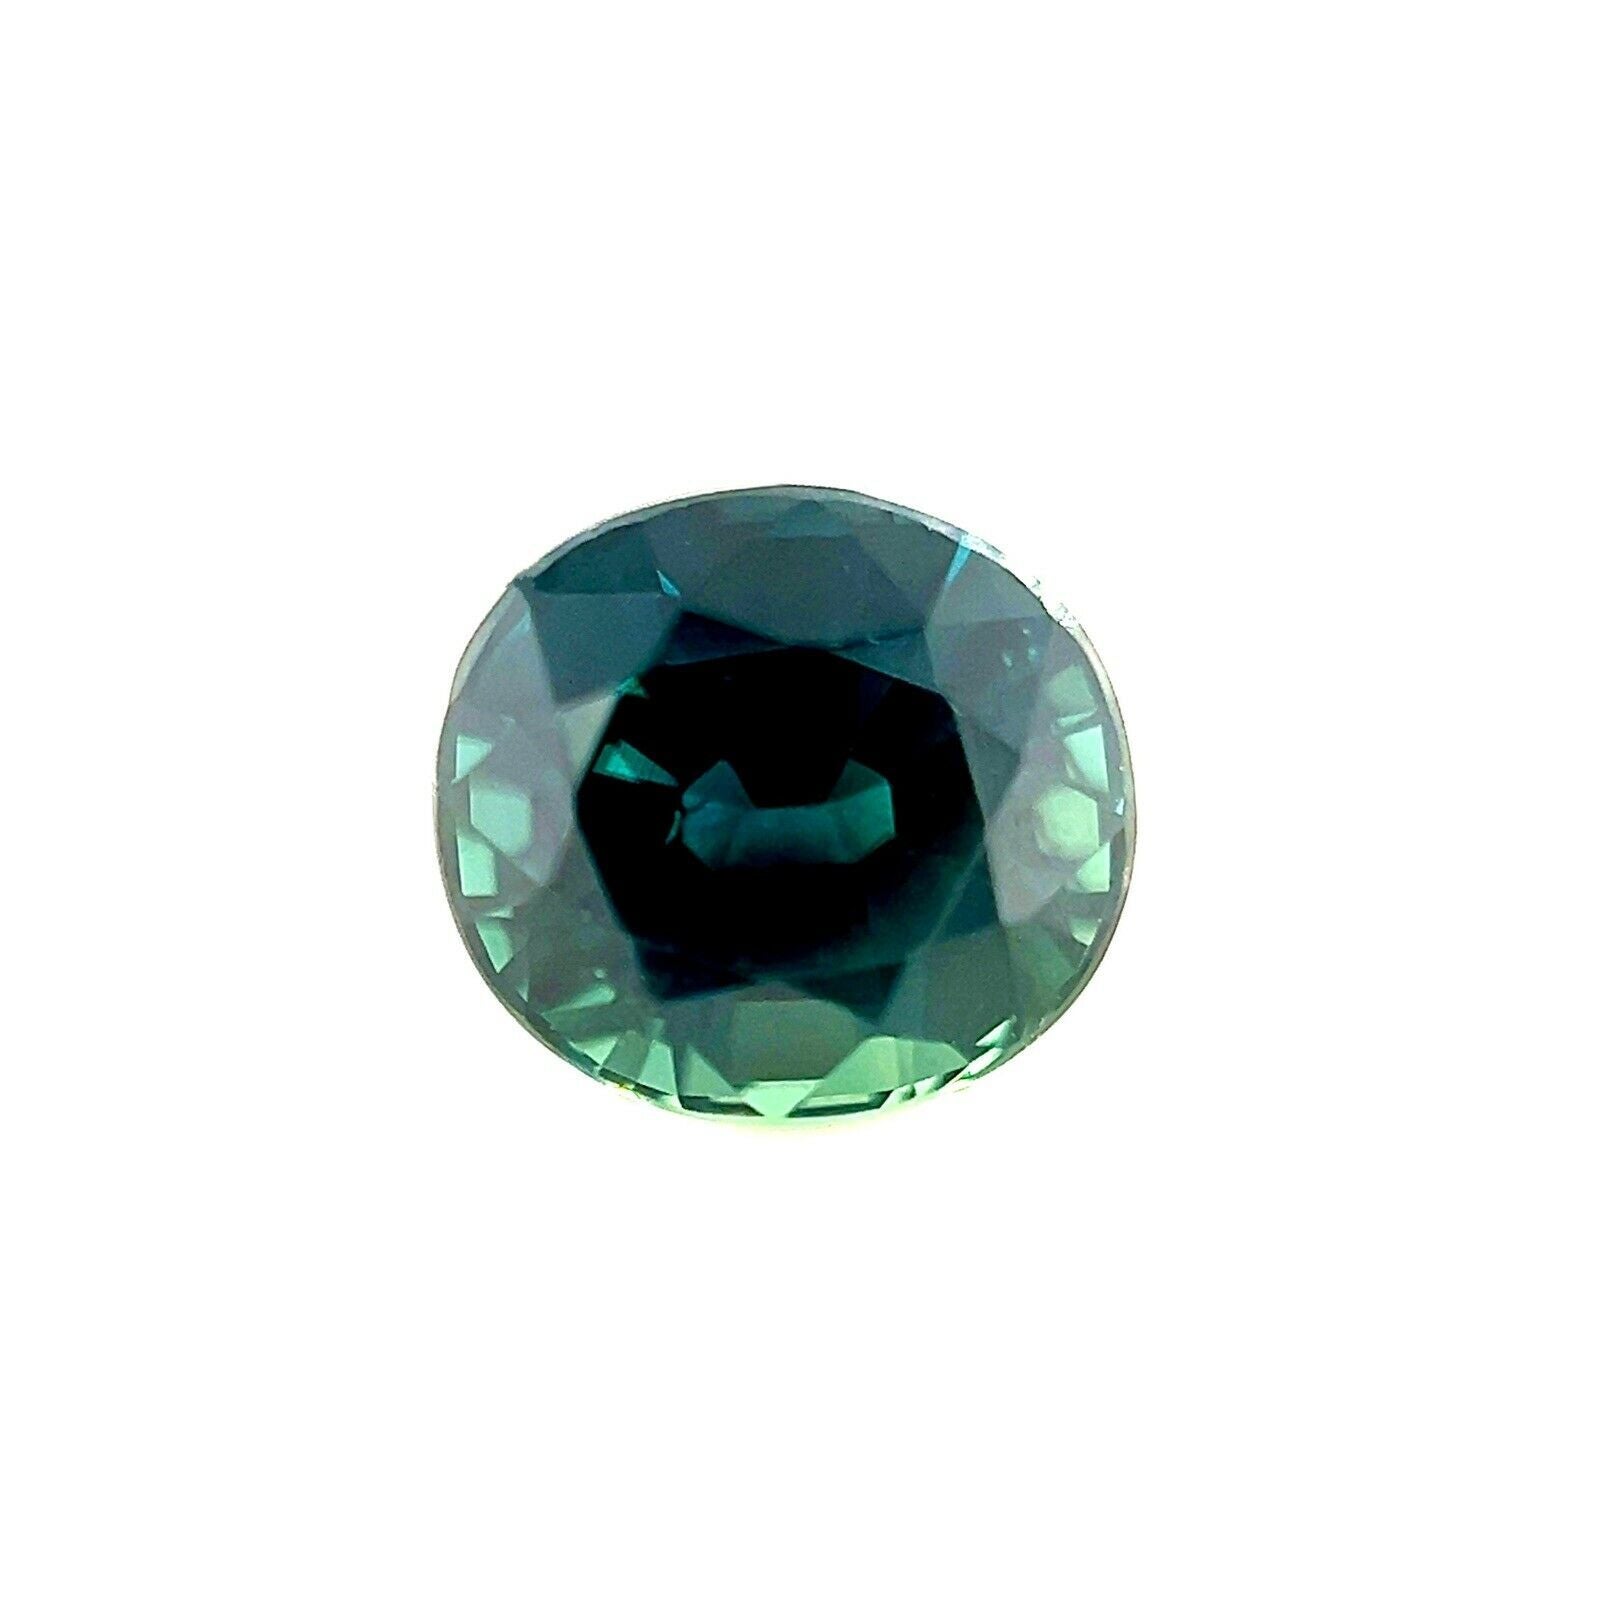 GRA Certified 1.61ct Deep Green Blue Sapphire Untreated Oval Cut Gem